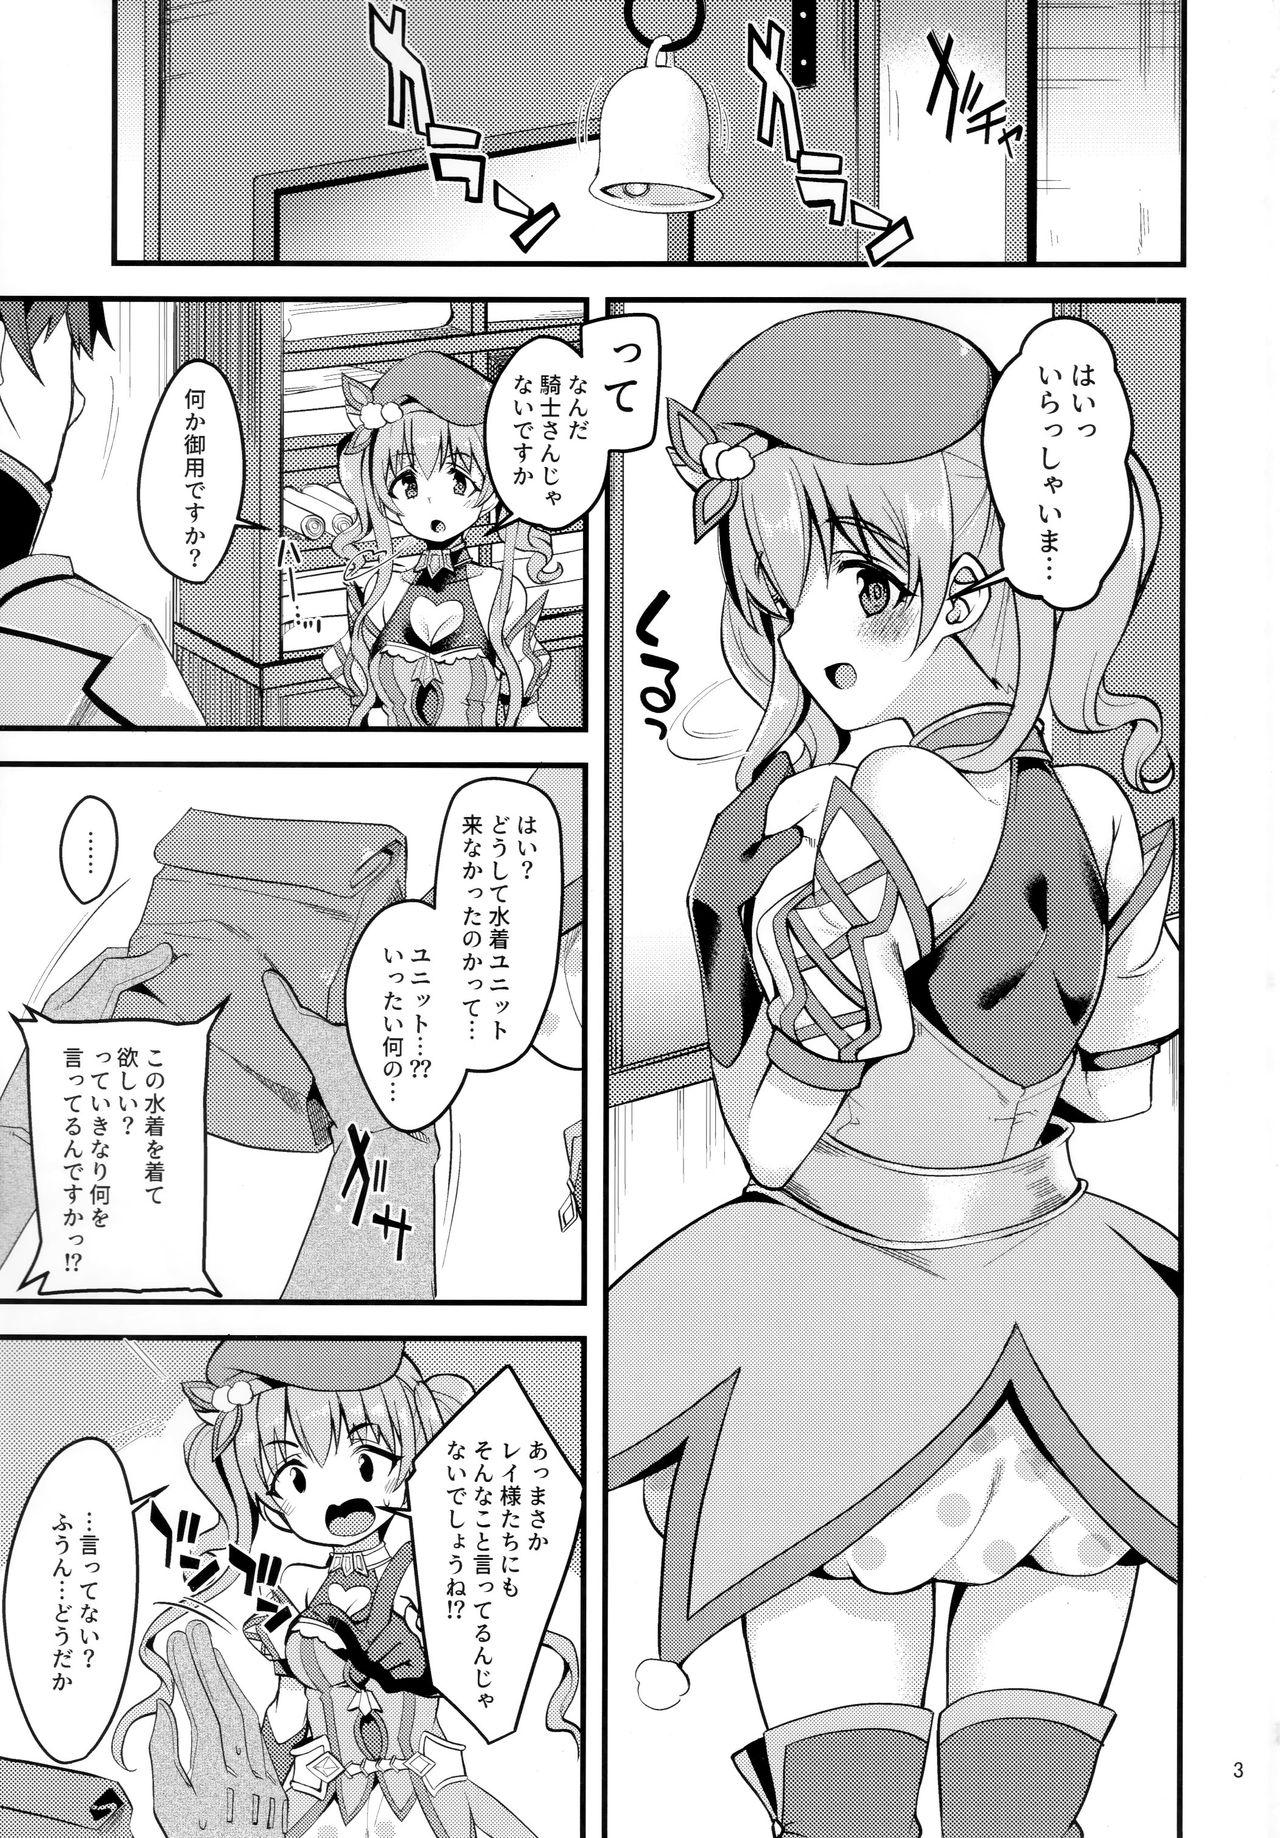 Tesao Tsumugi Make Heroine Move!! 02 - Princess connect Caught - Page 2